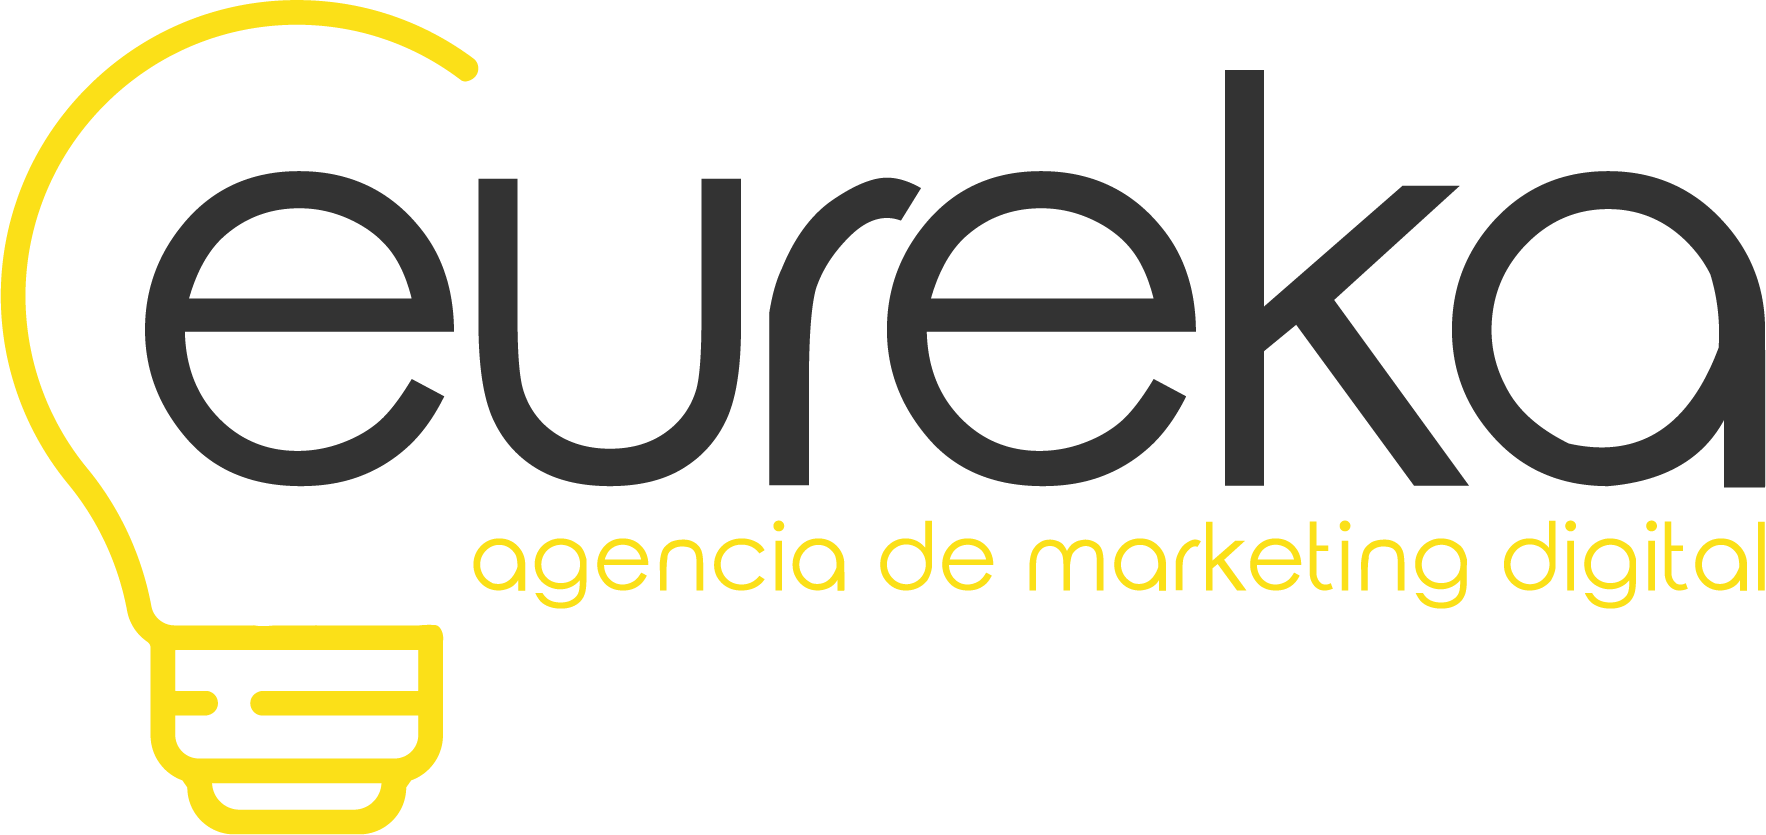 Eureka | Agencia de Marketing Digital